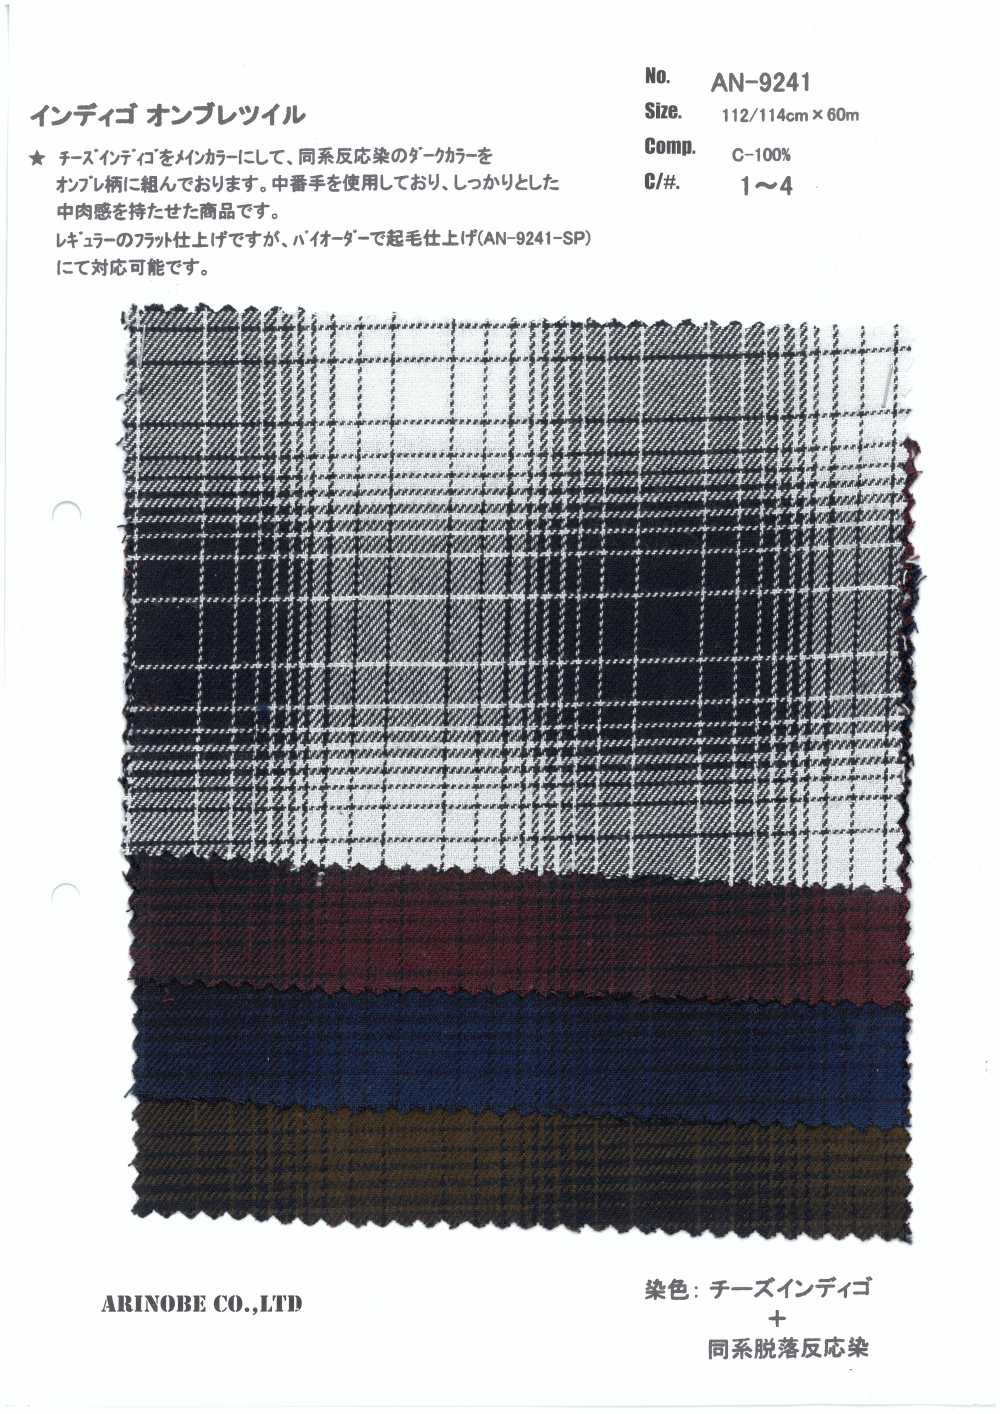 AN-9241 Sarga Ombre Índigo[Fabrica Textil] ARINOBE CO., LTD.